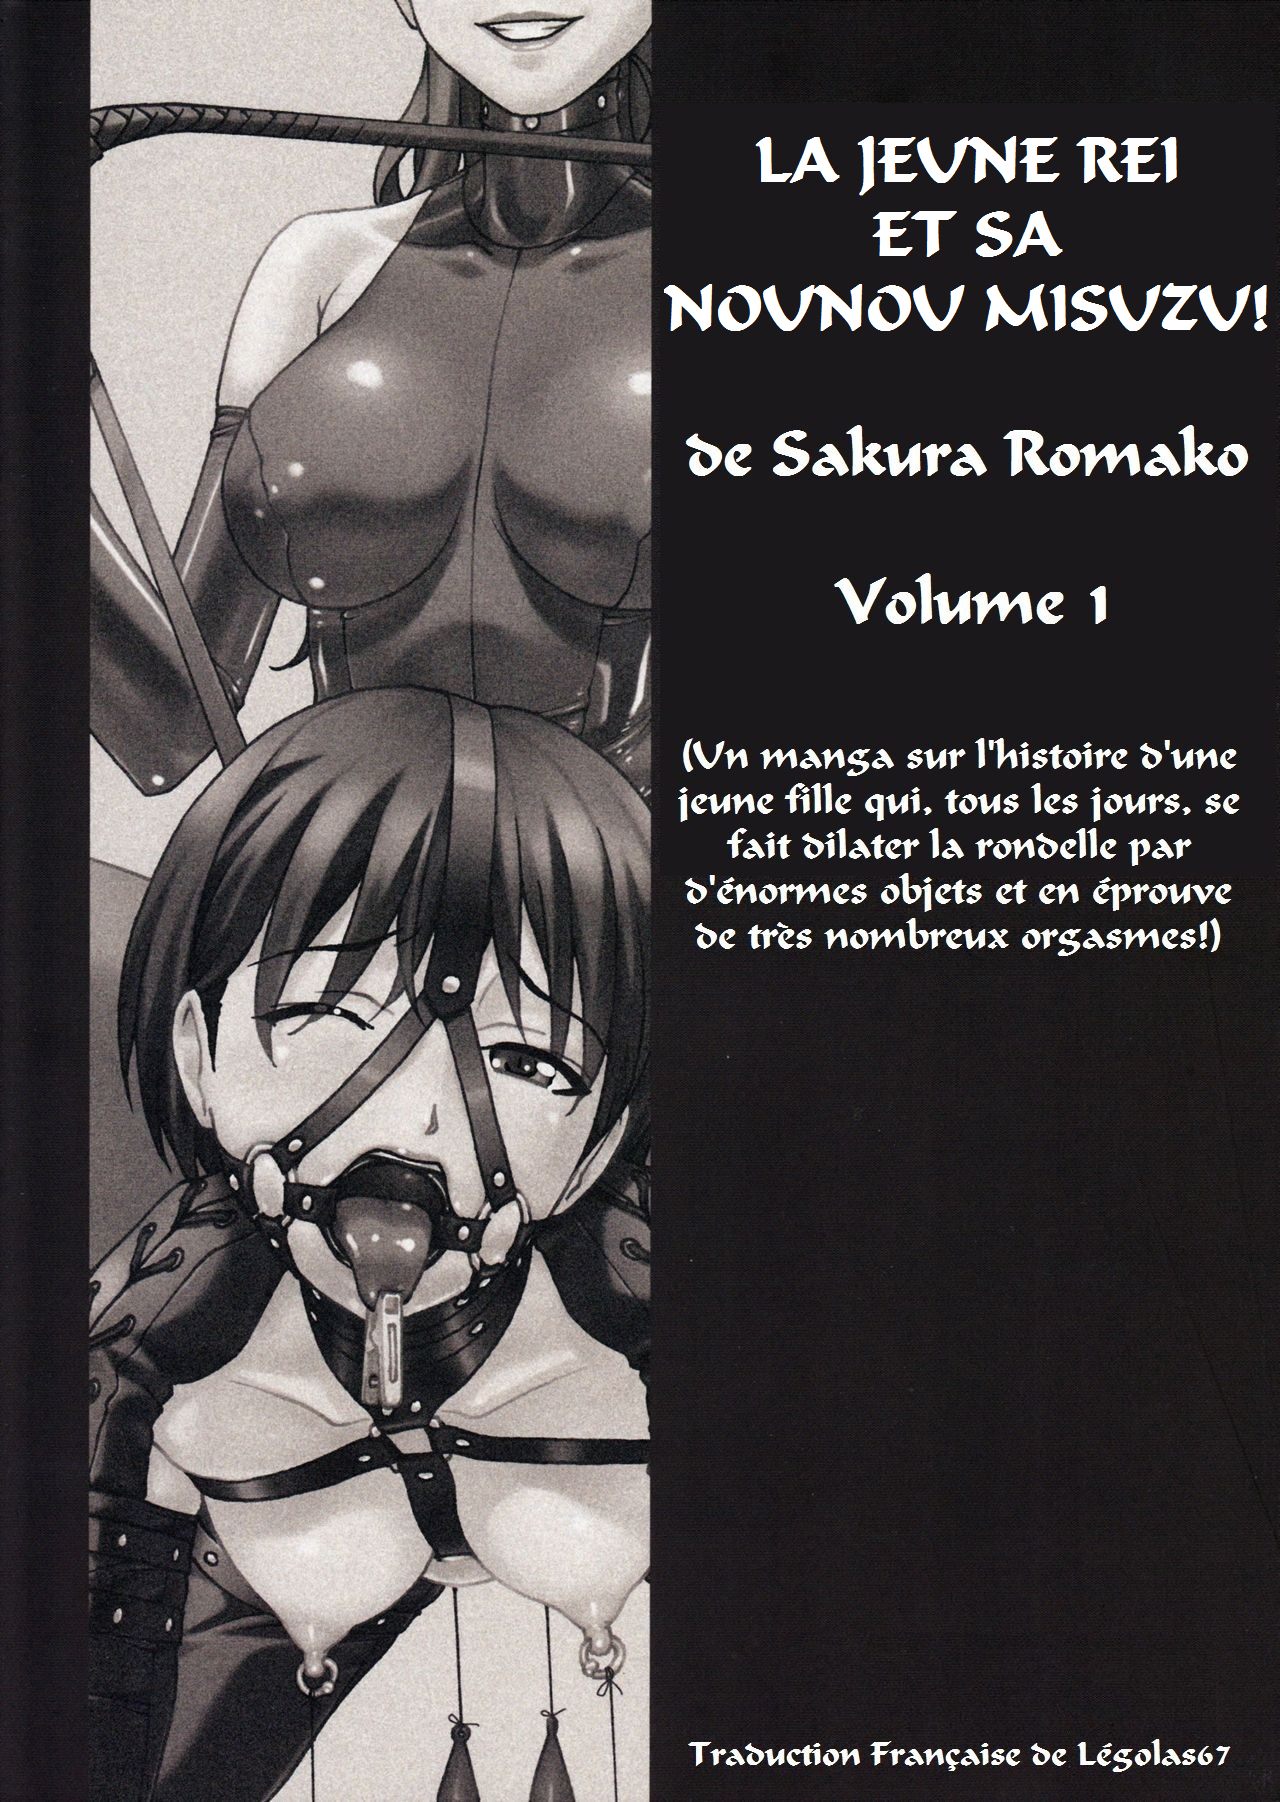 Anoko ga Mainichi Oshiri no Ana ni Butta Mono o Irerare Nando mo Zecchou ni Tassuru Manga  La jeune Rei et sa nounou Misuzu. Volume 1 numero d'image 1